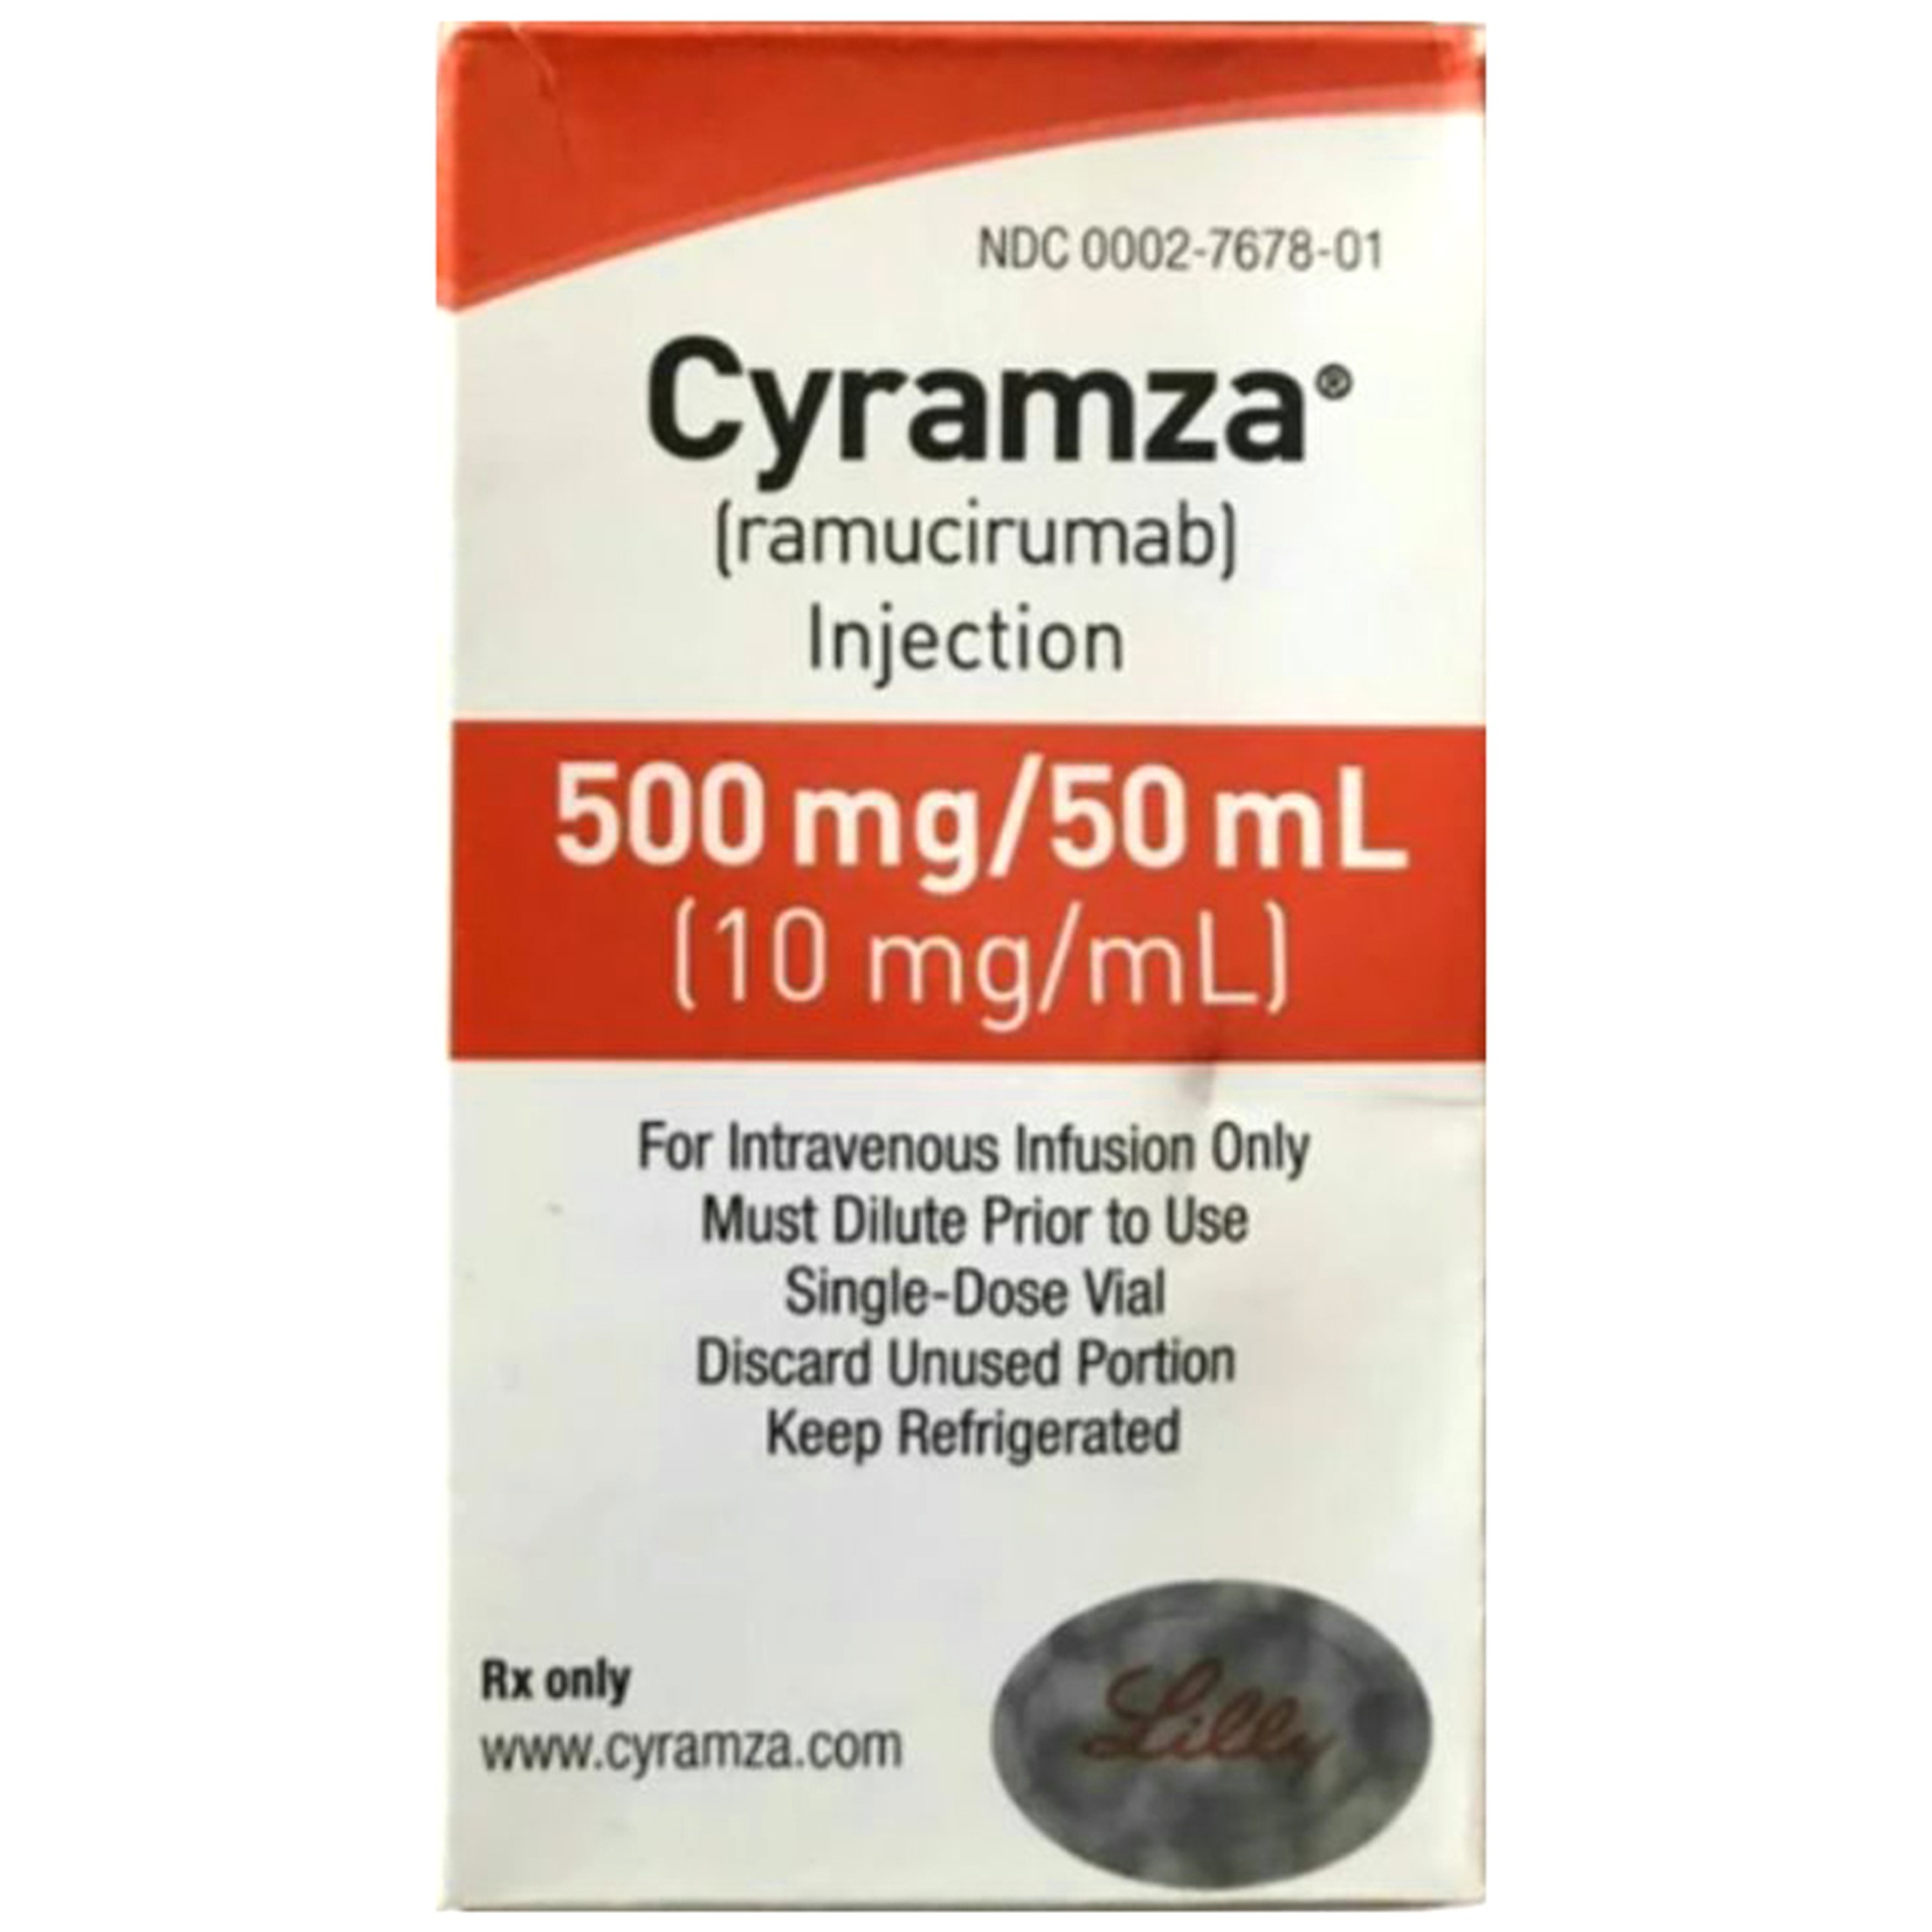 Thuốc Cyramza 500mg/50ml Lilly điều trị ung thư dạ dày, ung thư phổi, ung thư gan